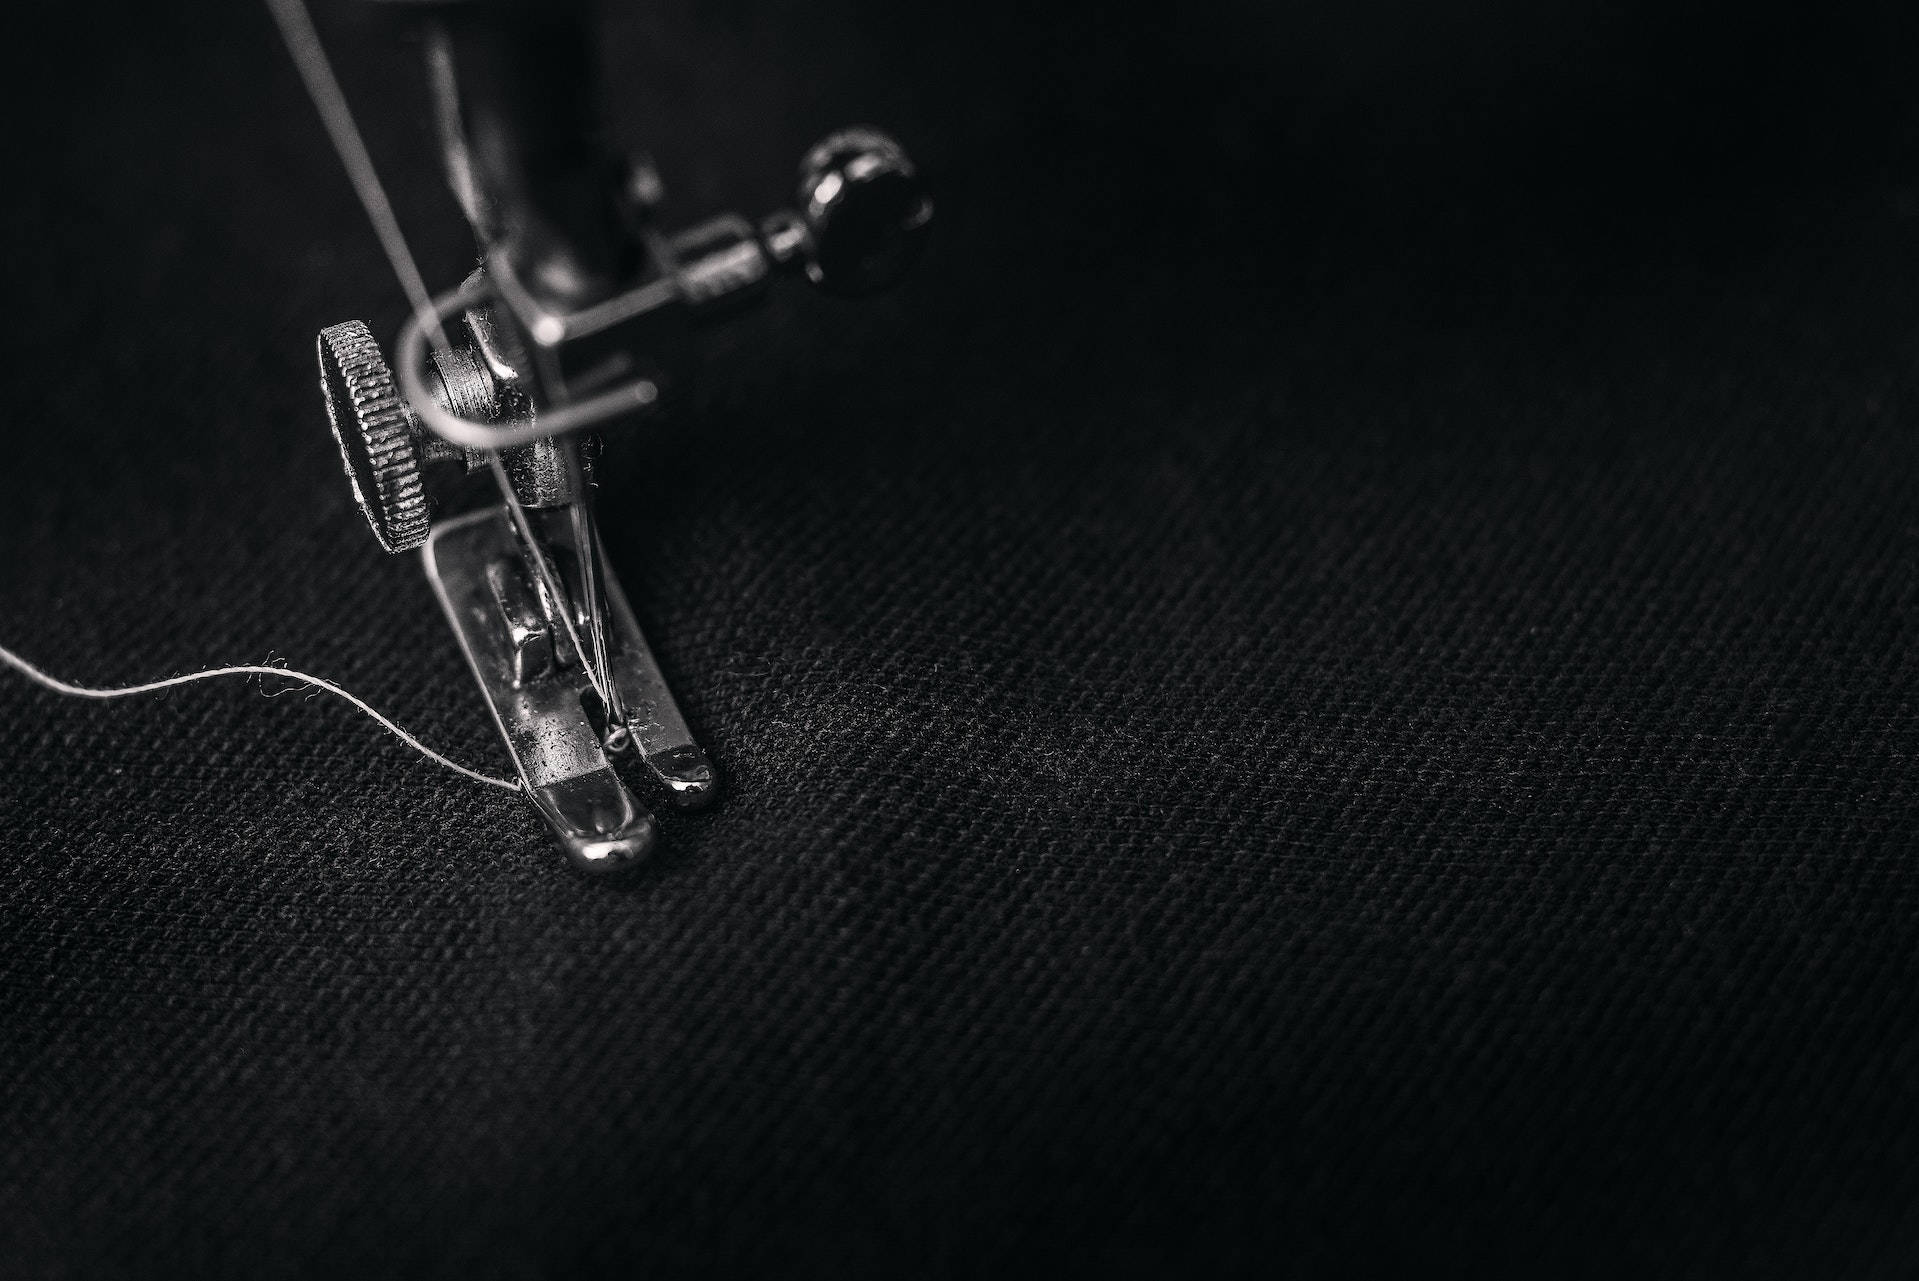 1920x1080 Hd Dark Sewing Machine Background